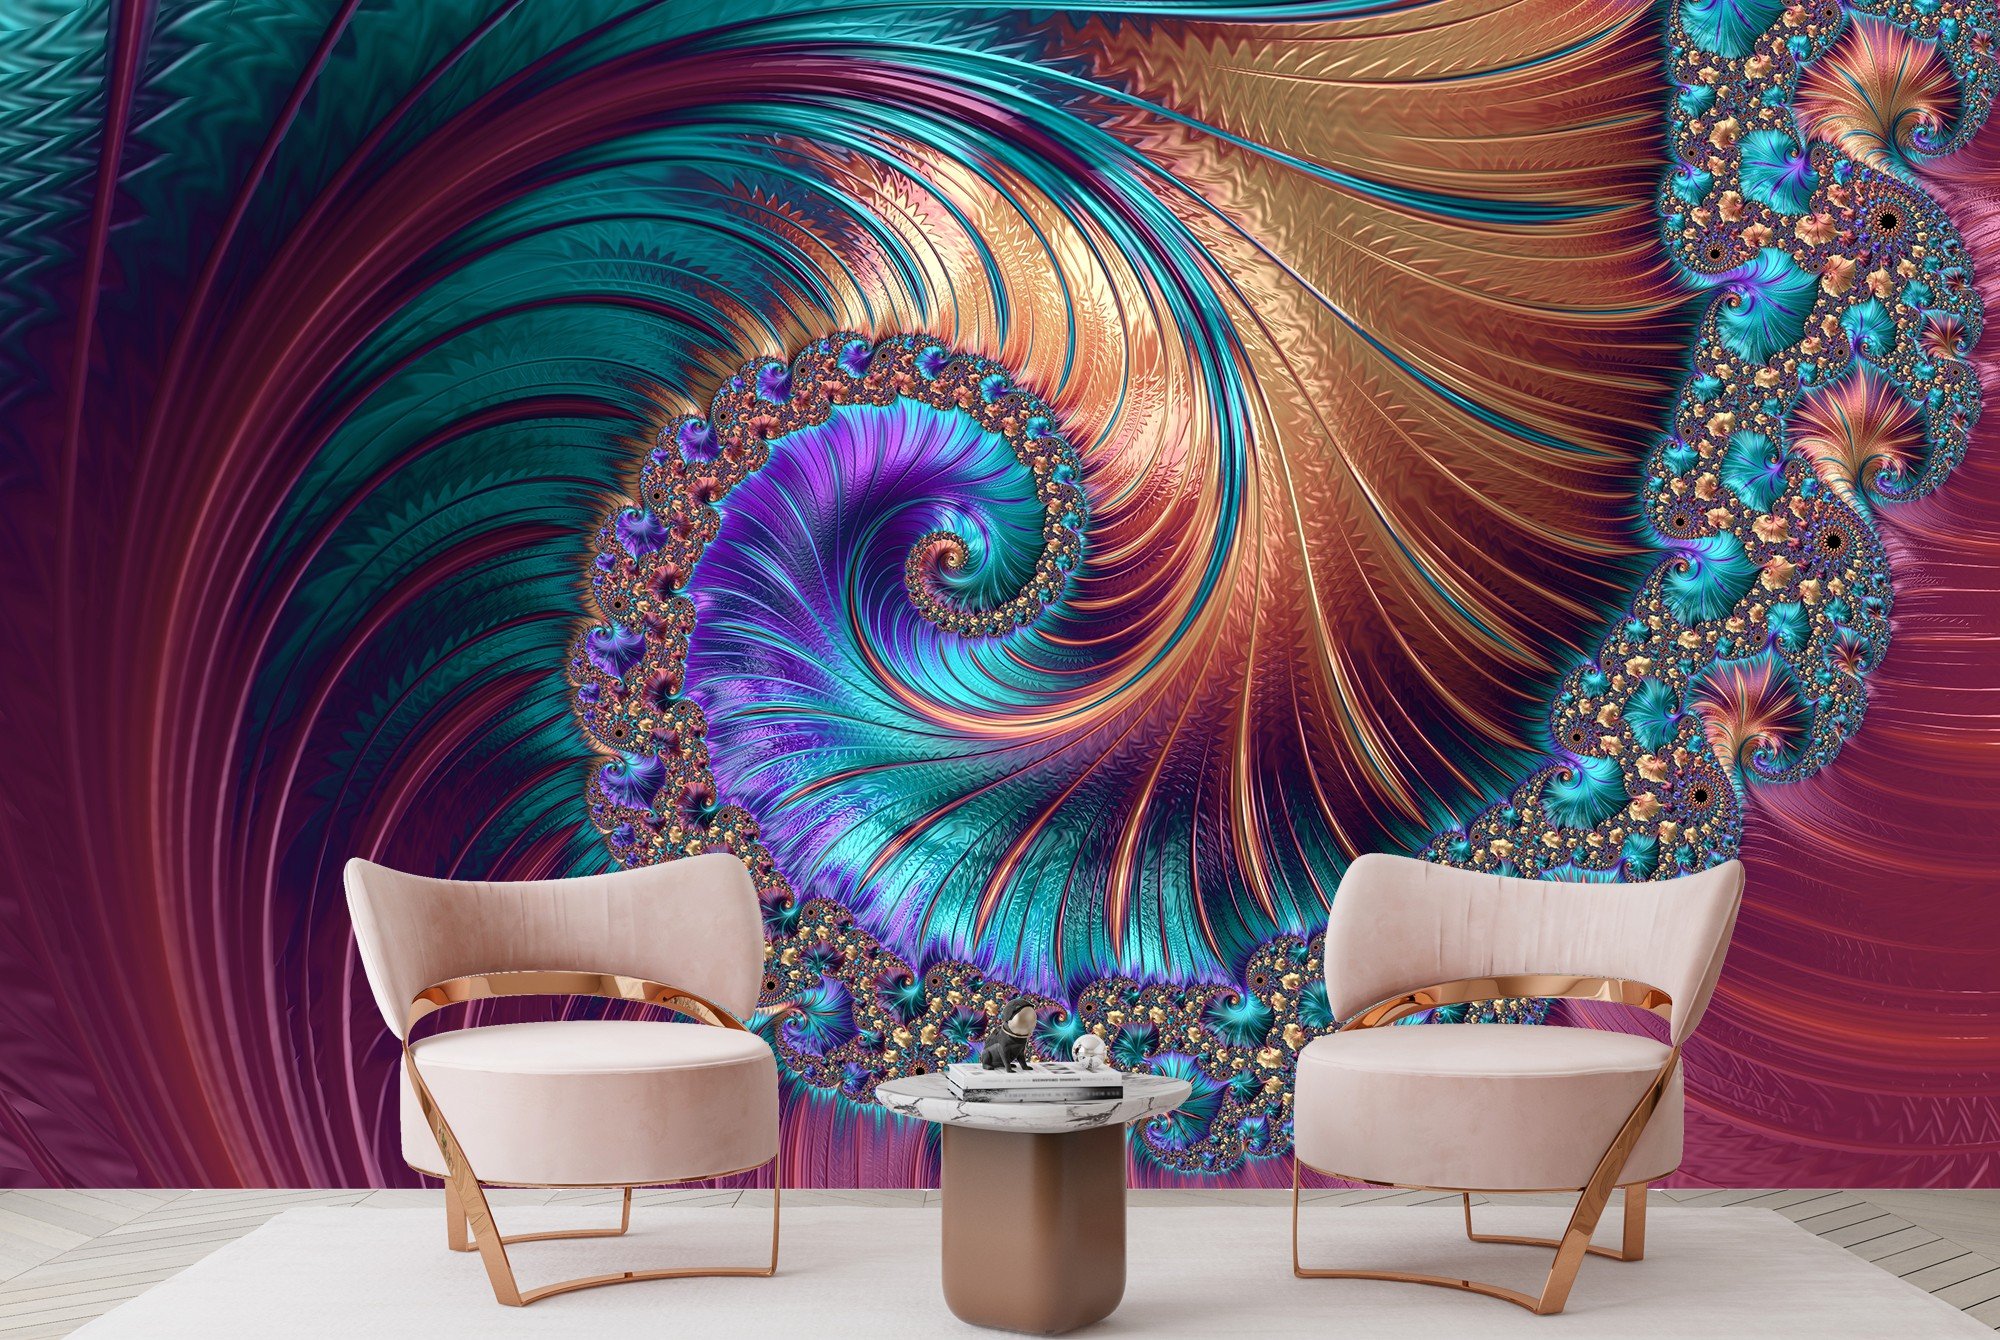 Pink Swirl Wall Mural Blue Spiral 3D Photo Wallpaper ...